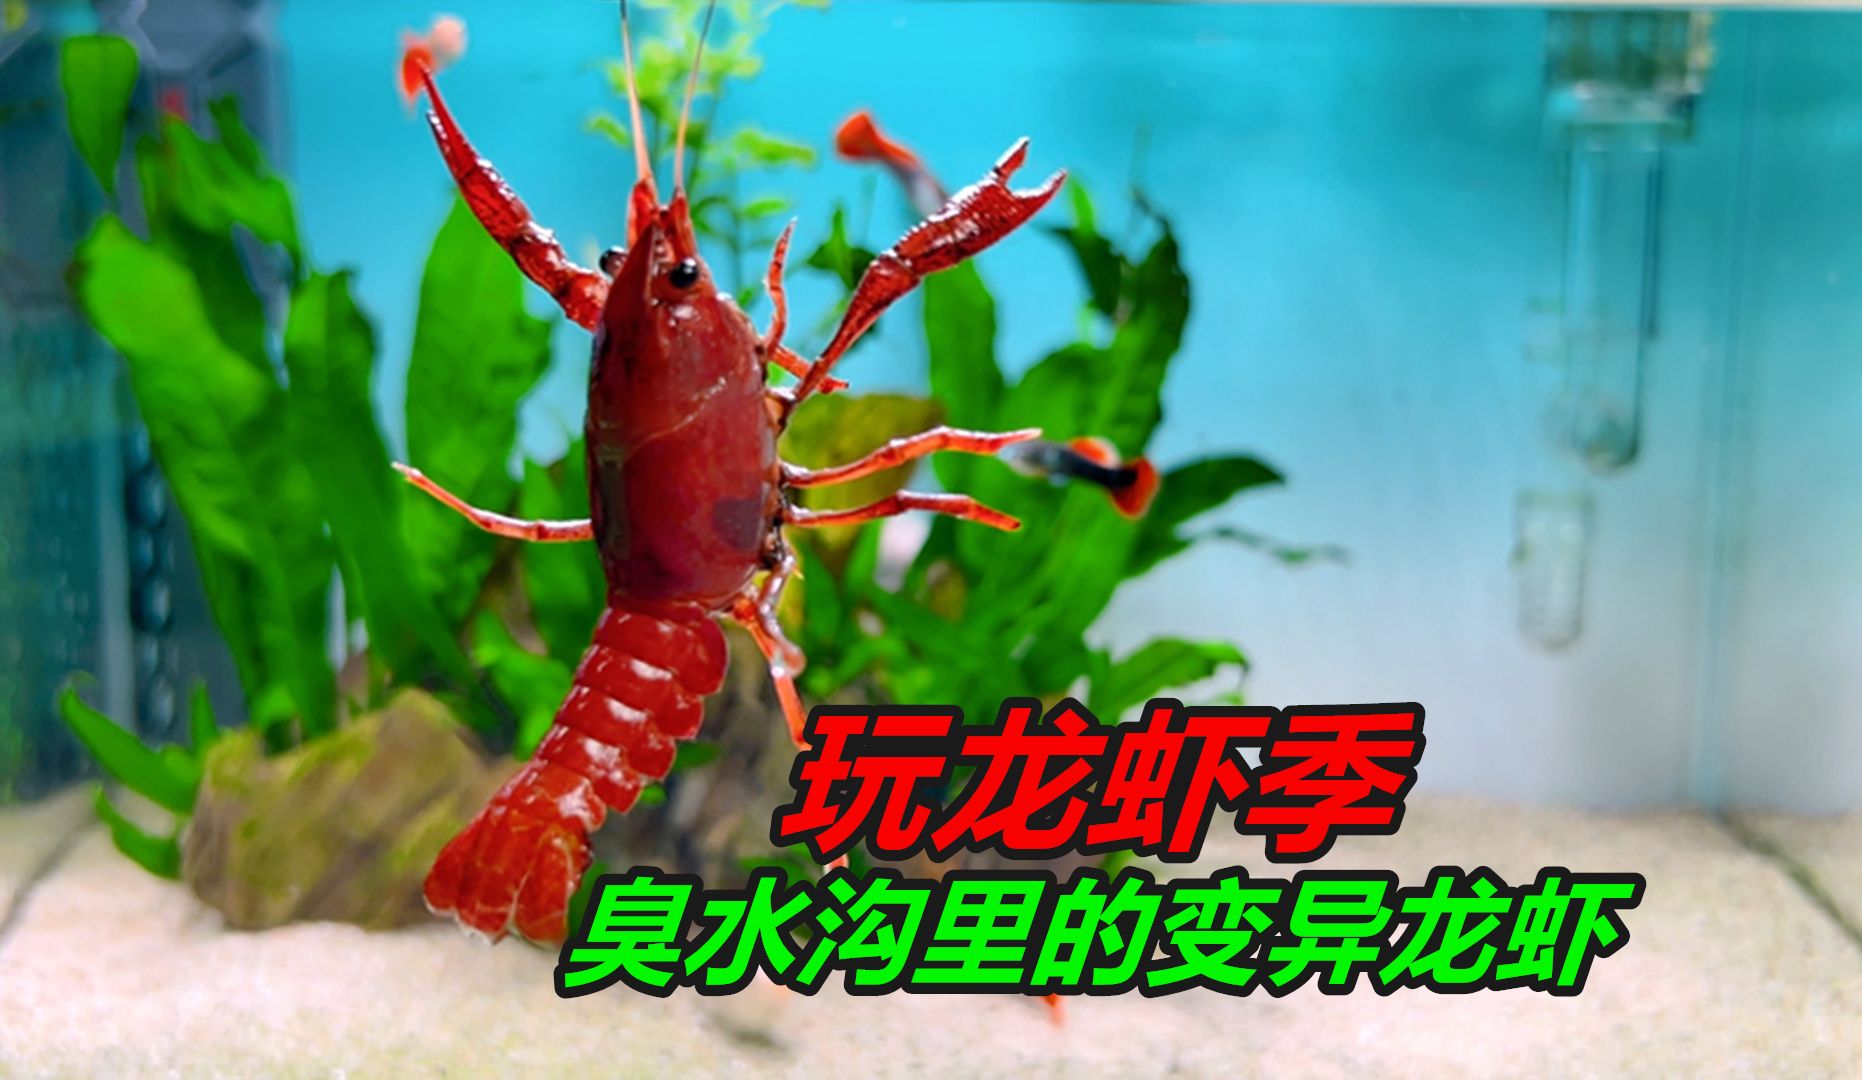 臭水沟里的小龙虾变异了，身体颜色有些古怪，变得红粉相间